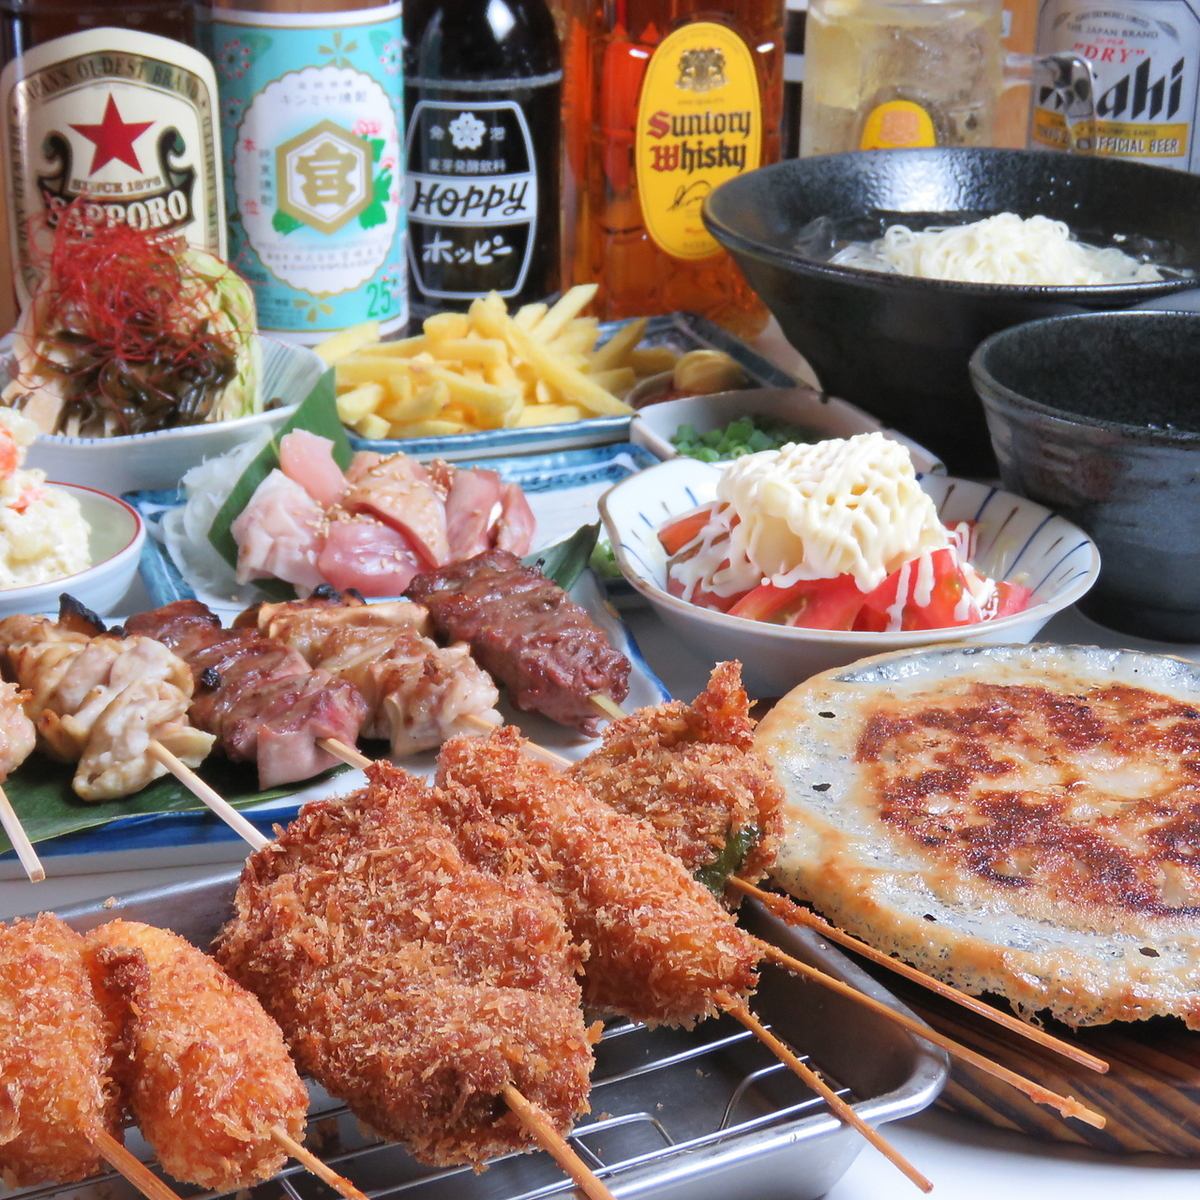 A popular bar with delicious kushikatsu and gyoza